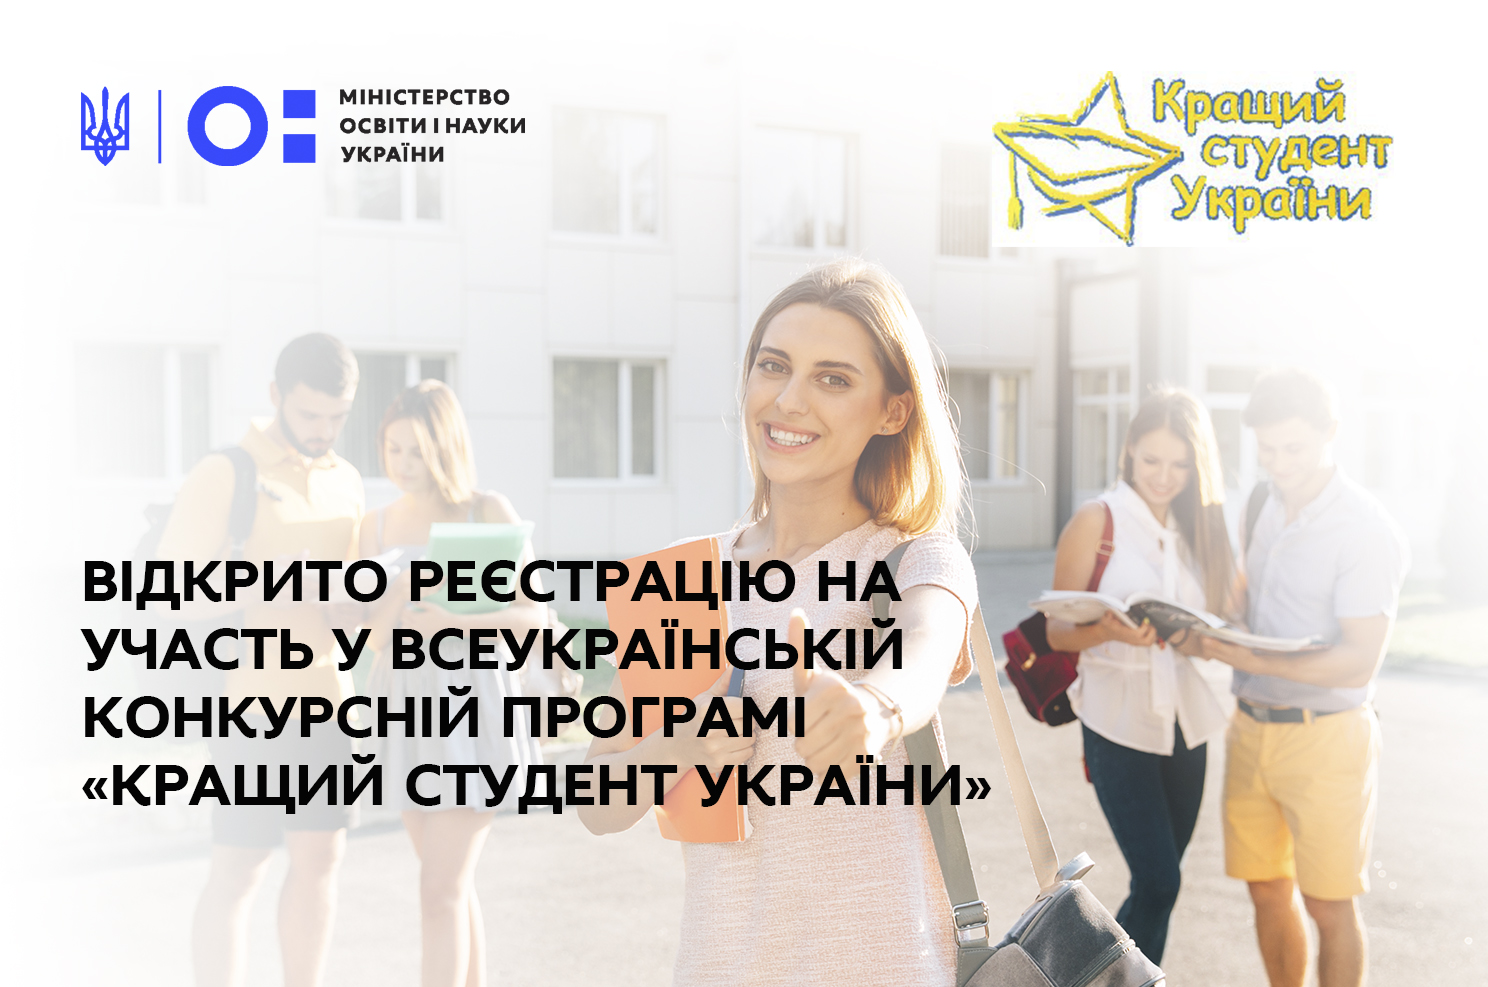 Всеукраїнська конкурсна програма «Кращий студент України»